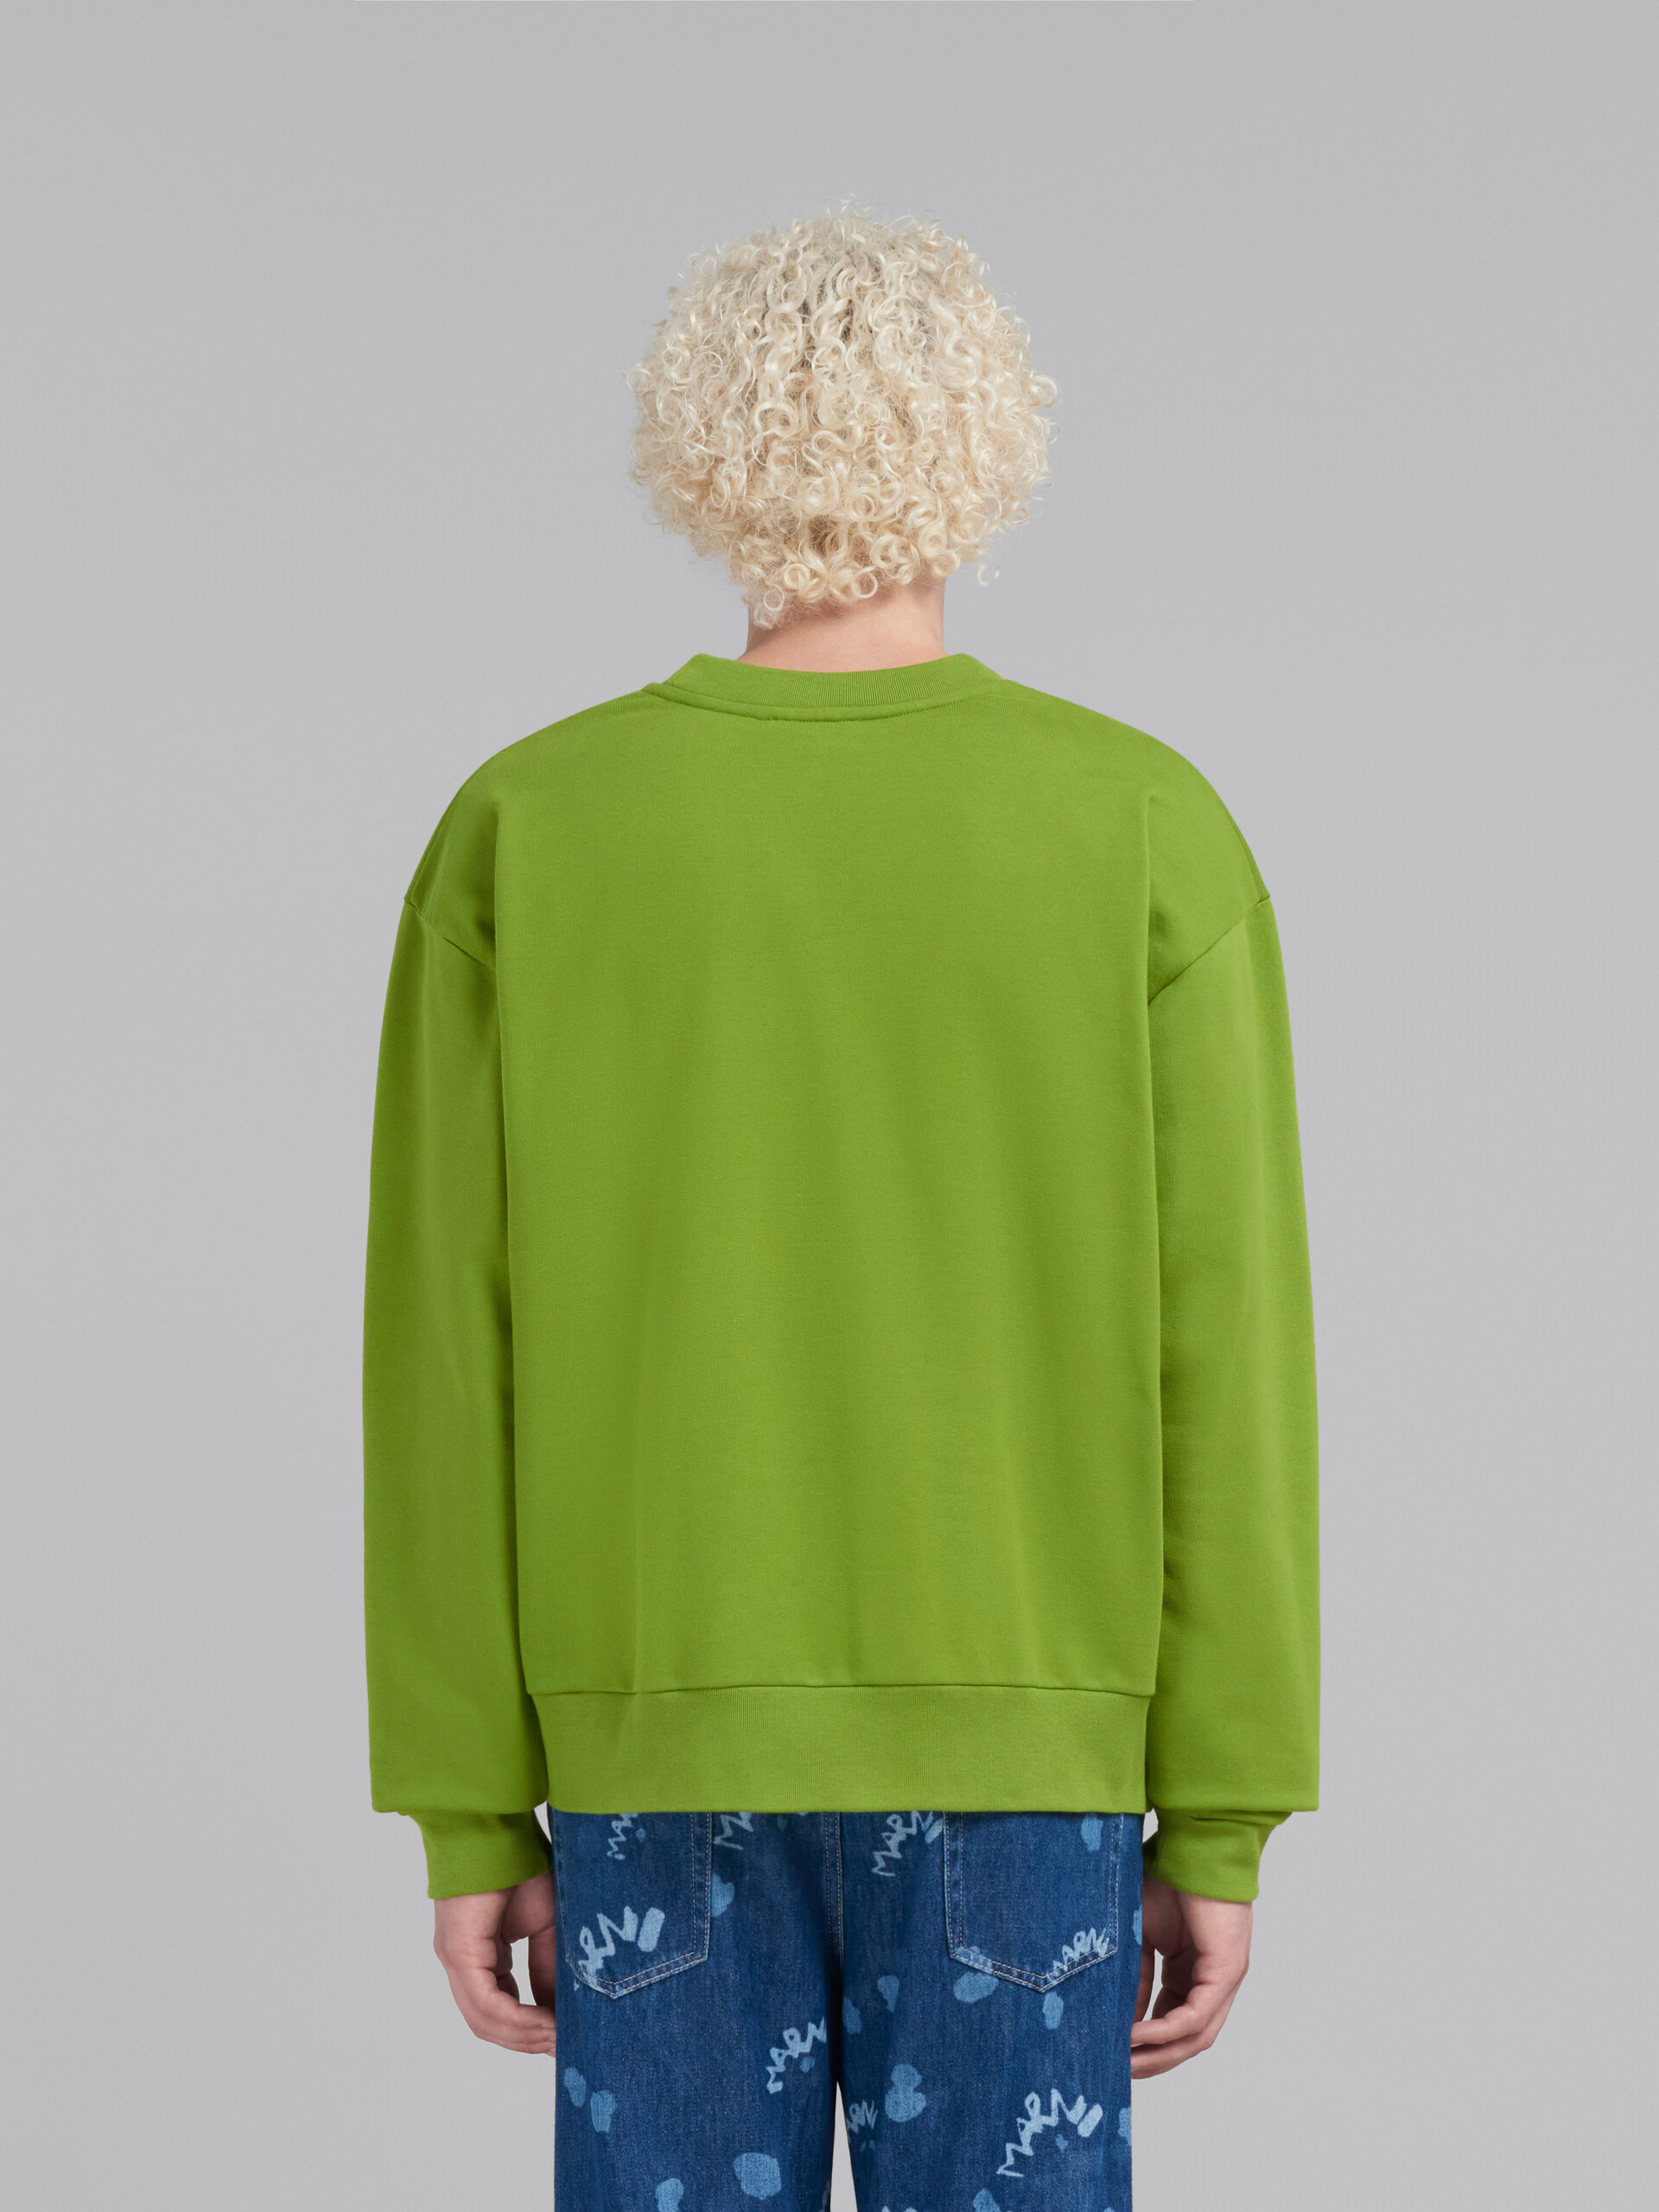 グリーン Marni Drippingプリント オーガニックコットン製スウェットシャツ - ニット - Image 3